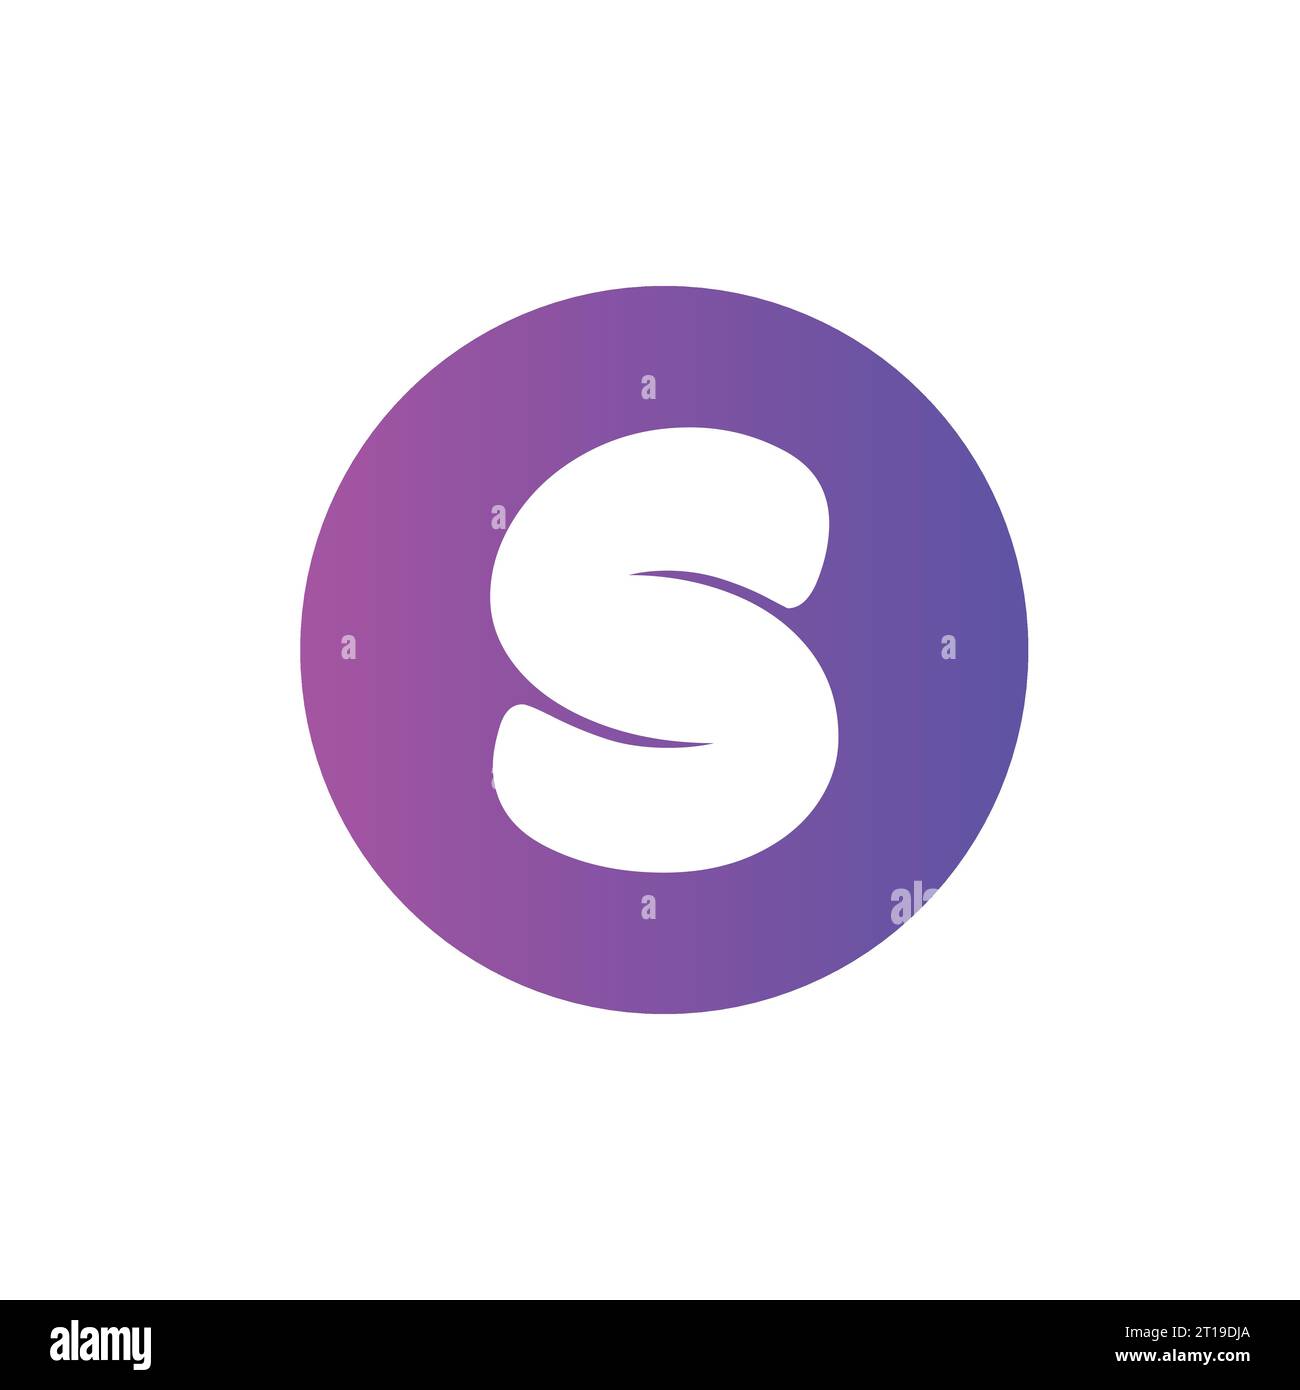 S letter logo design Stock Vector